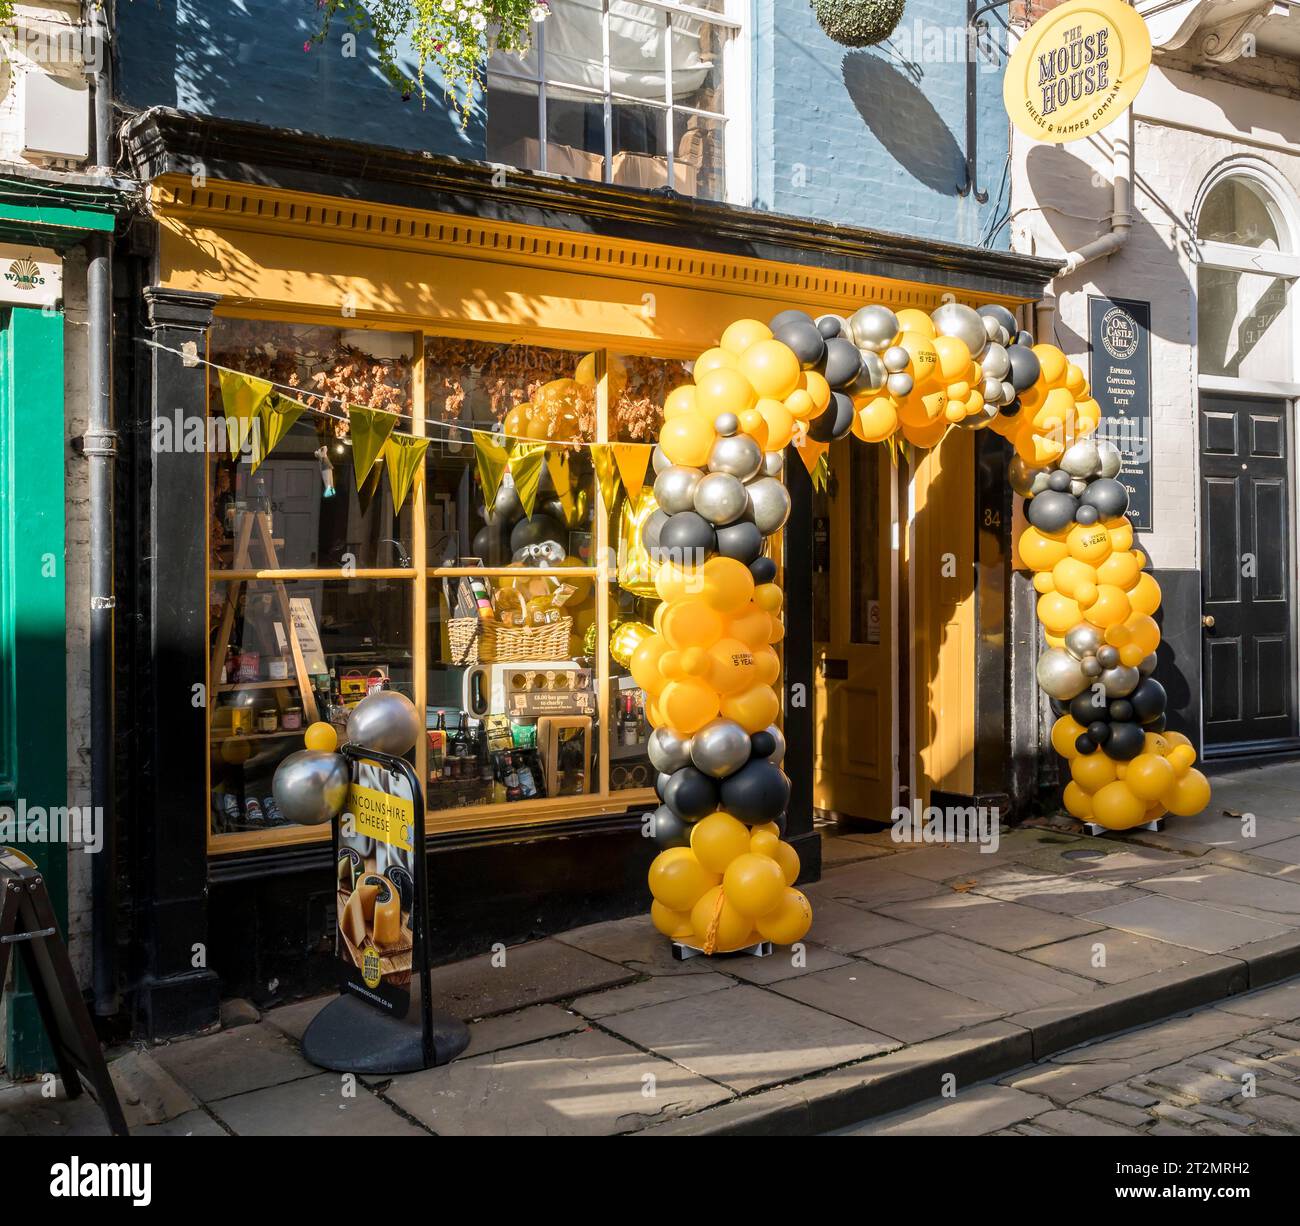 Lincolnshire Cheese Shop célébrant 5 ans de commerce avec affichage de ballon jaune autour de la porte, Steep Hill, Lincoln City, Lincolnshire, Angleterre, ROYAUME-UNI Banque D'Images